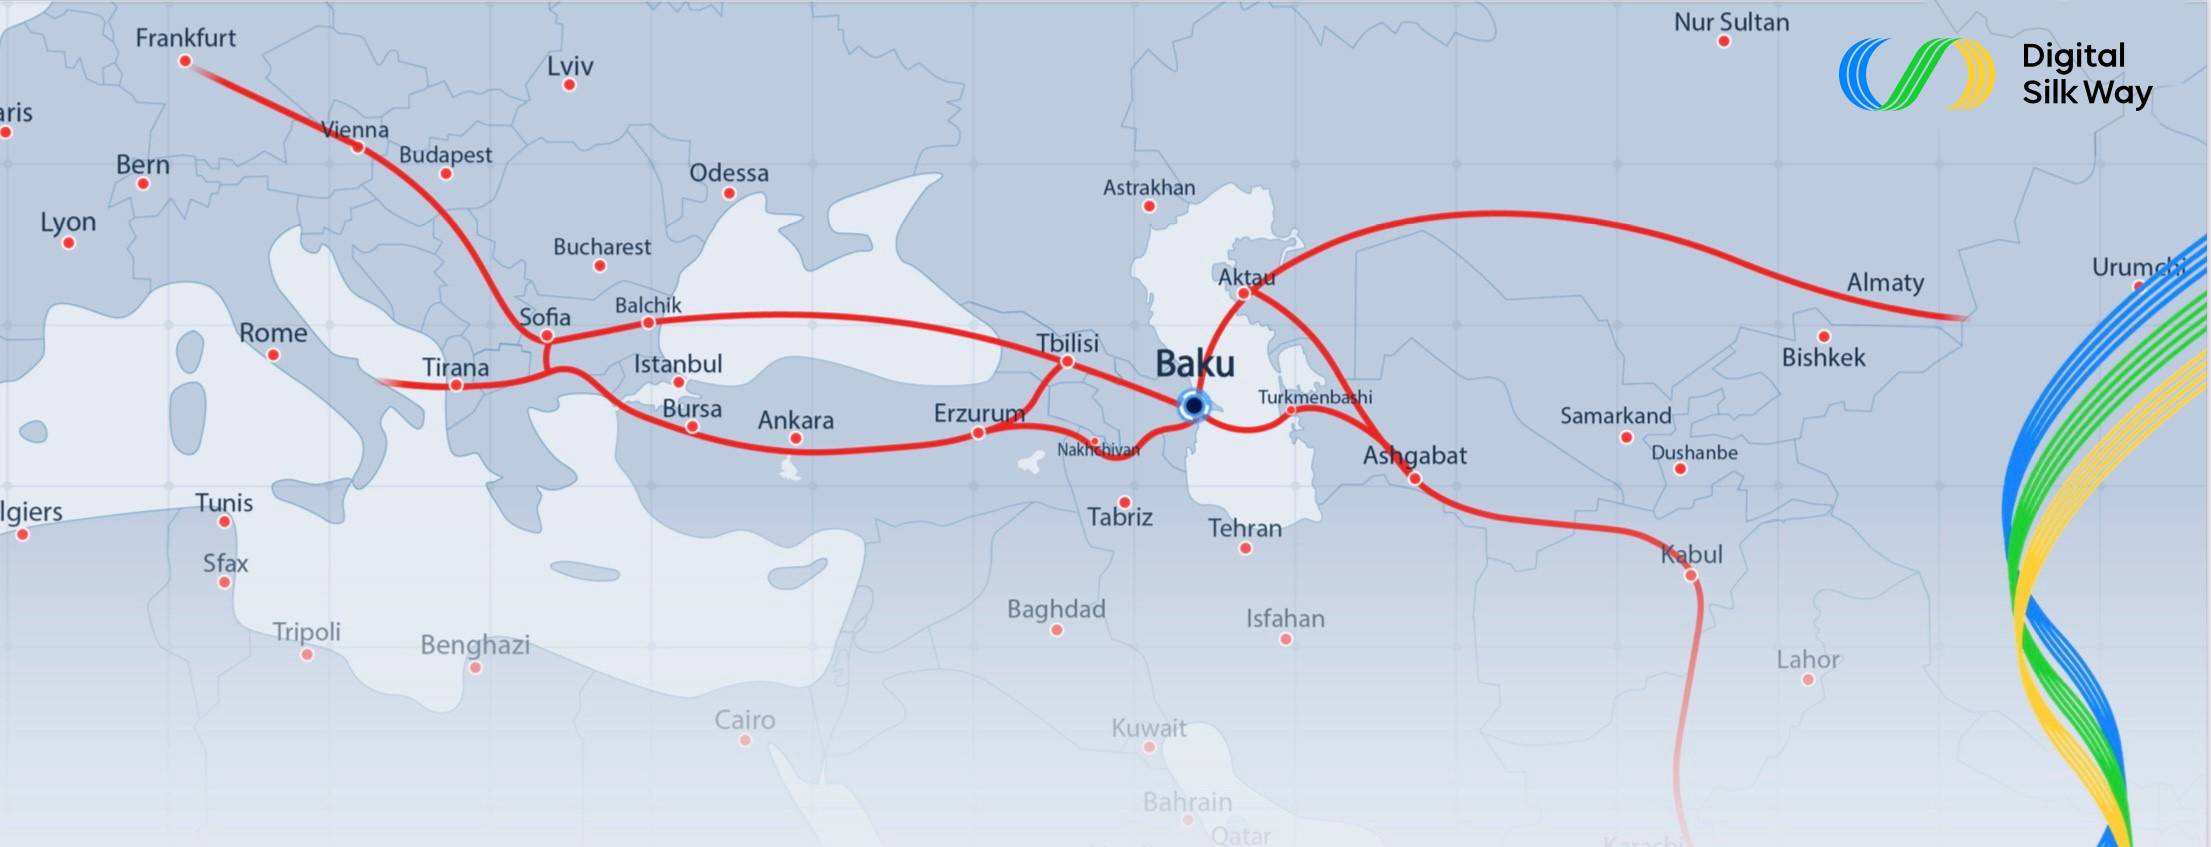 Digital Silk Way Map1